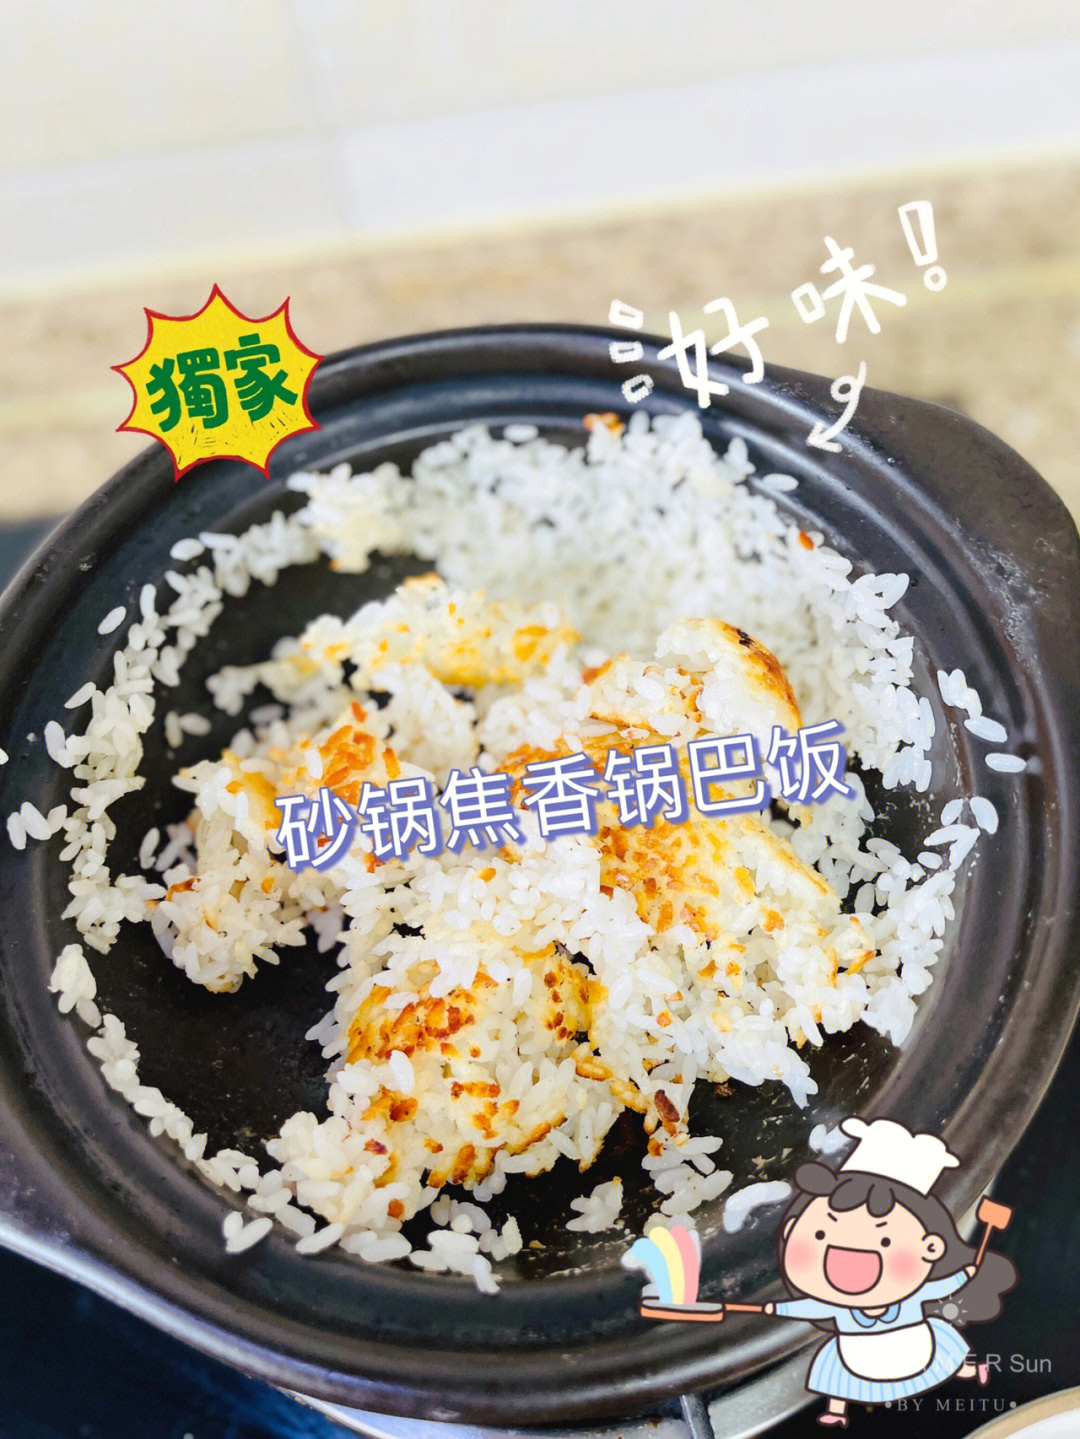 锅巴米饭的做法及图片图片